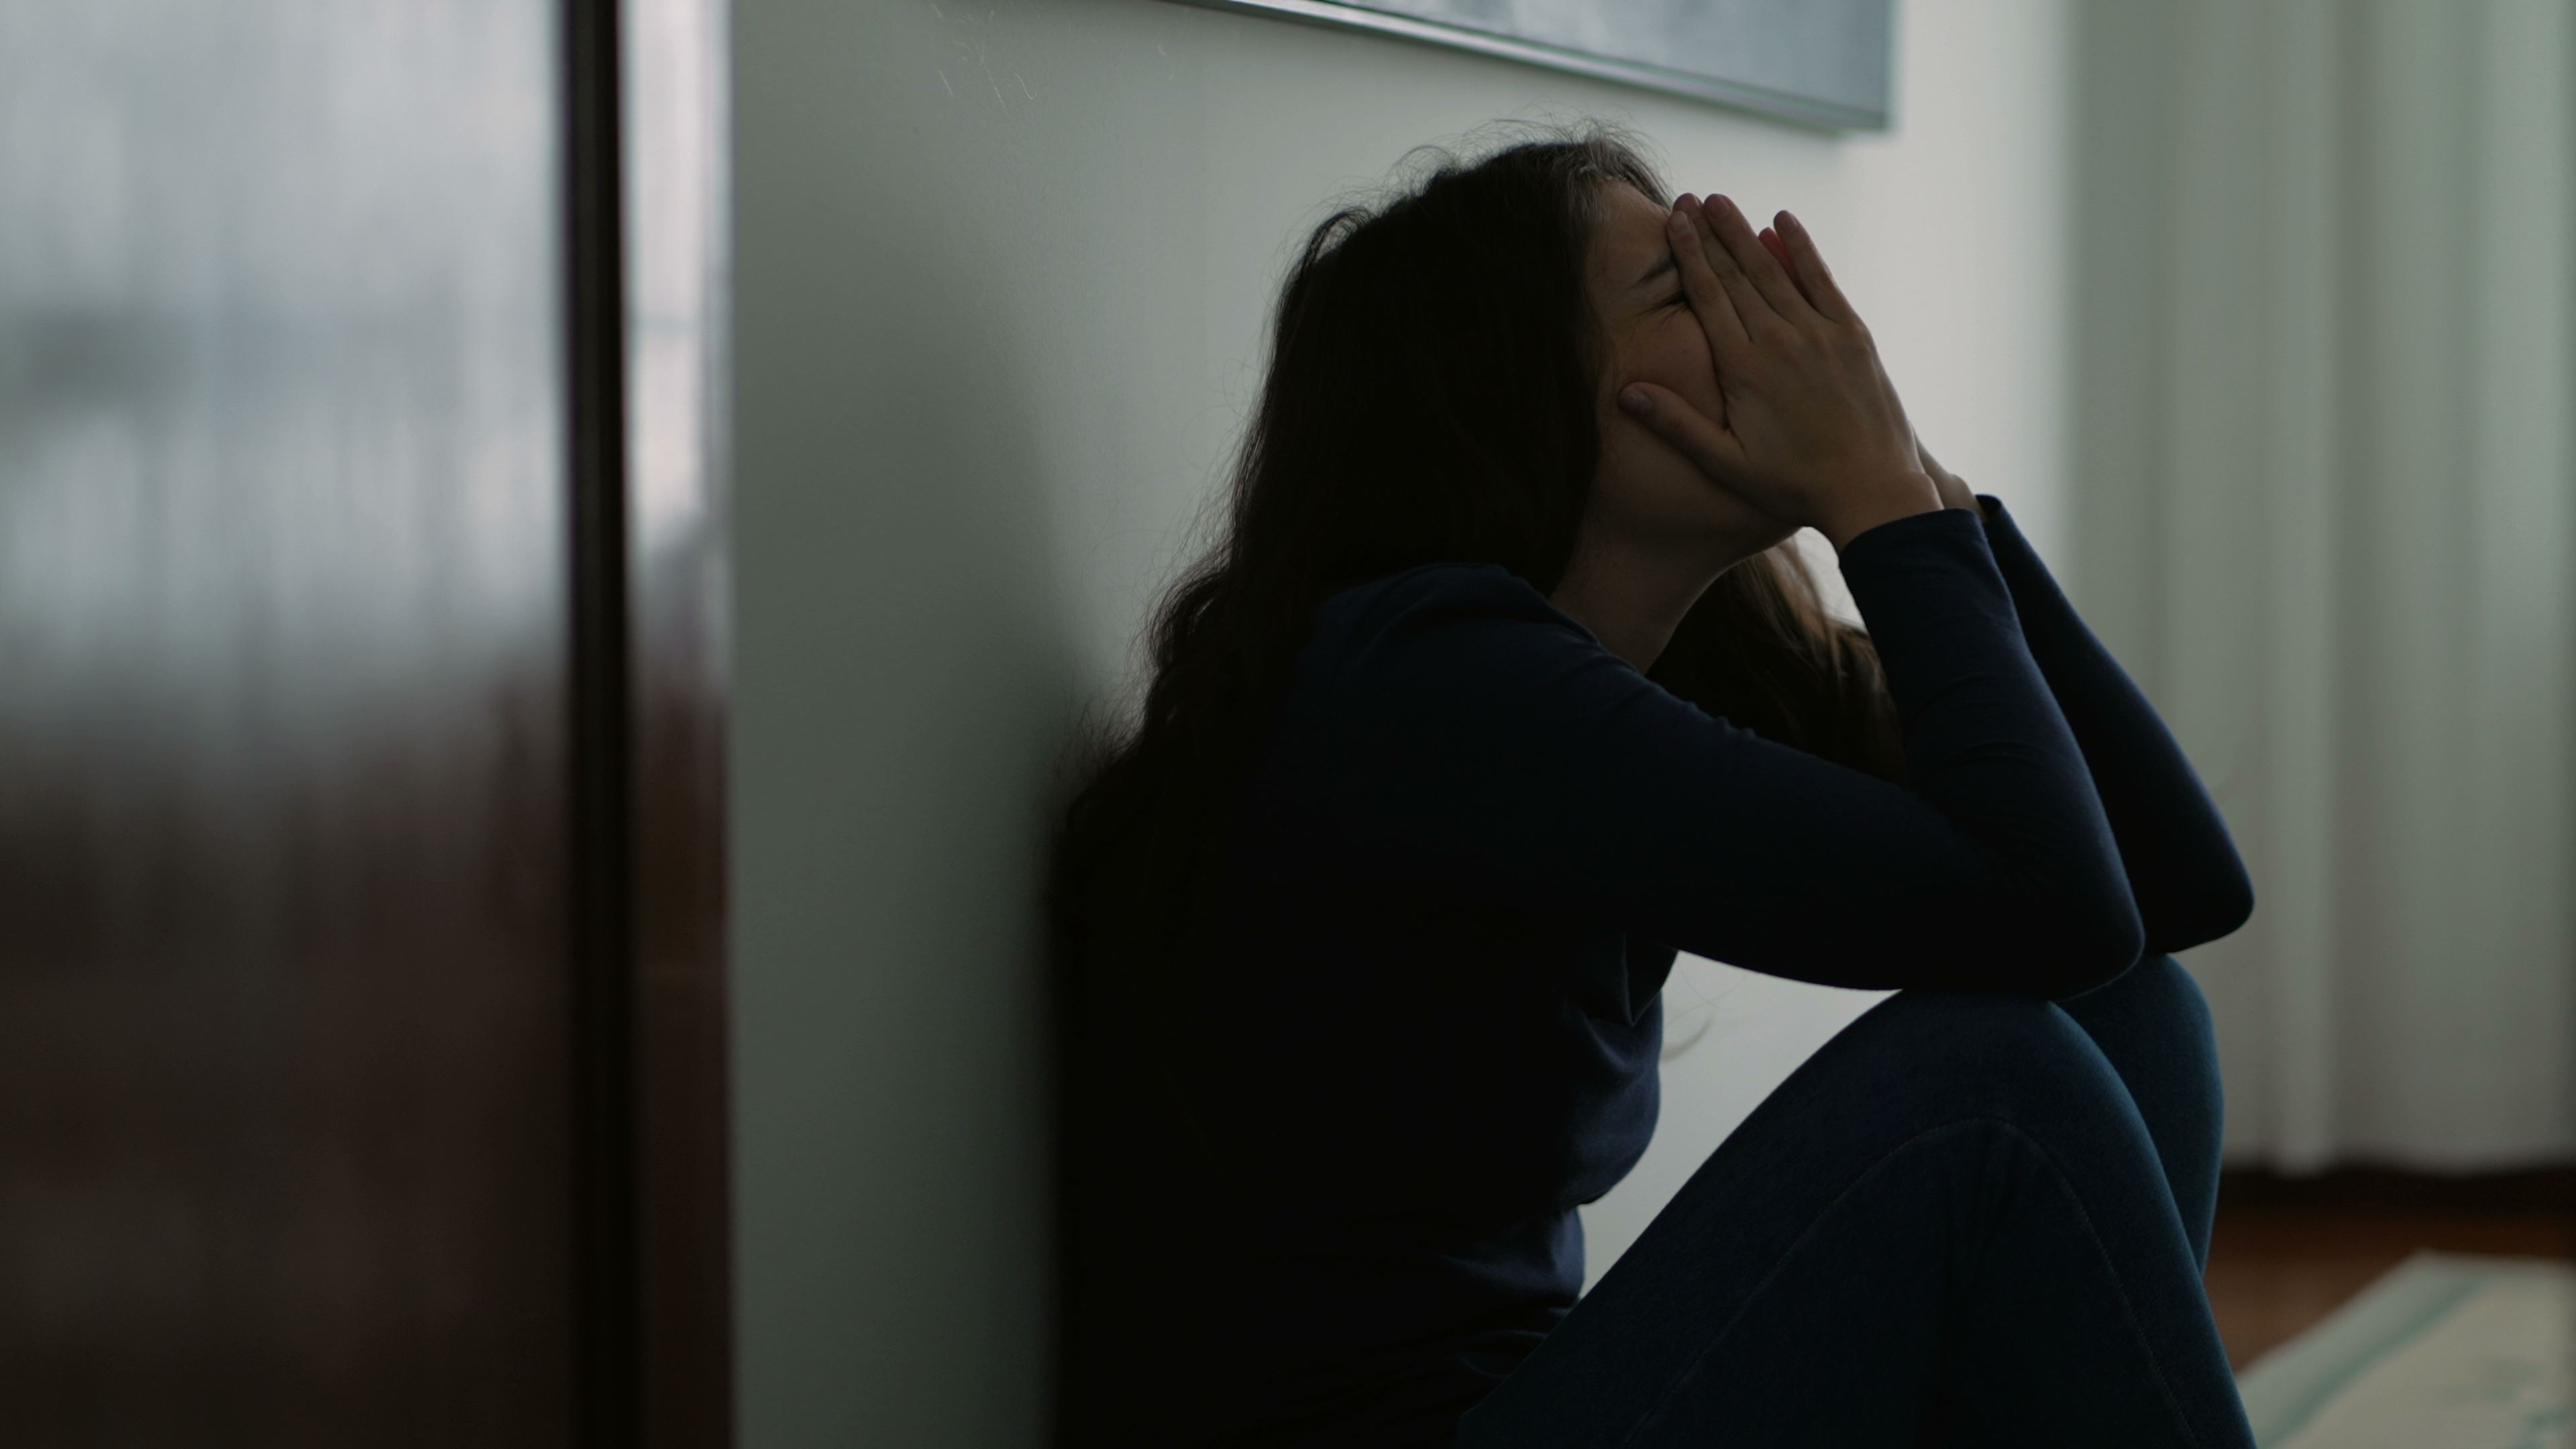 Woman feeling emotional pain | Source: Shutterstock